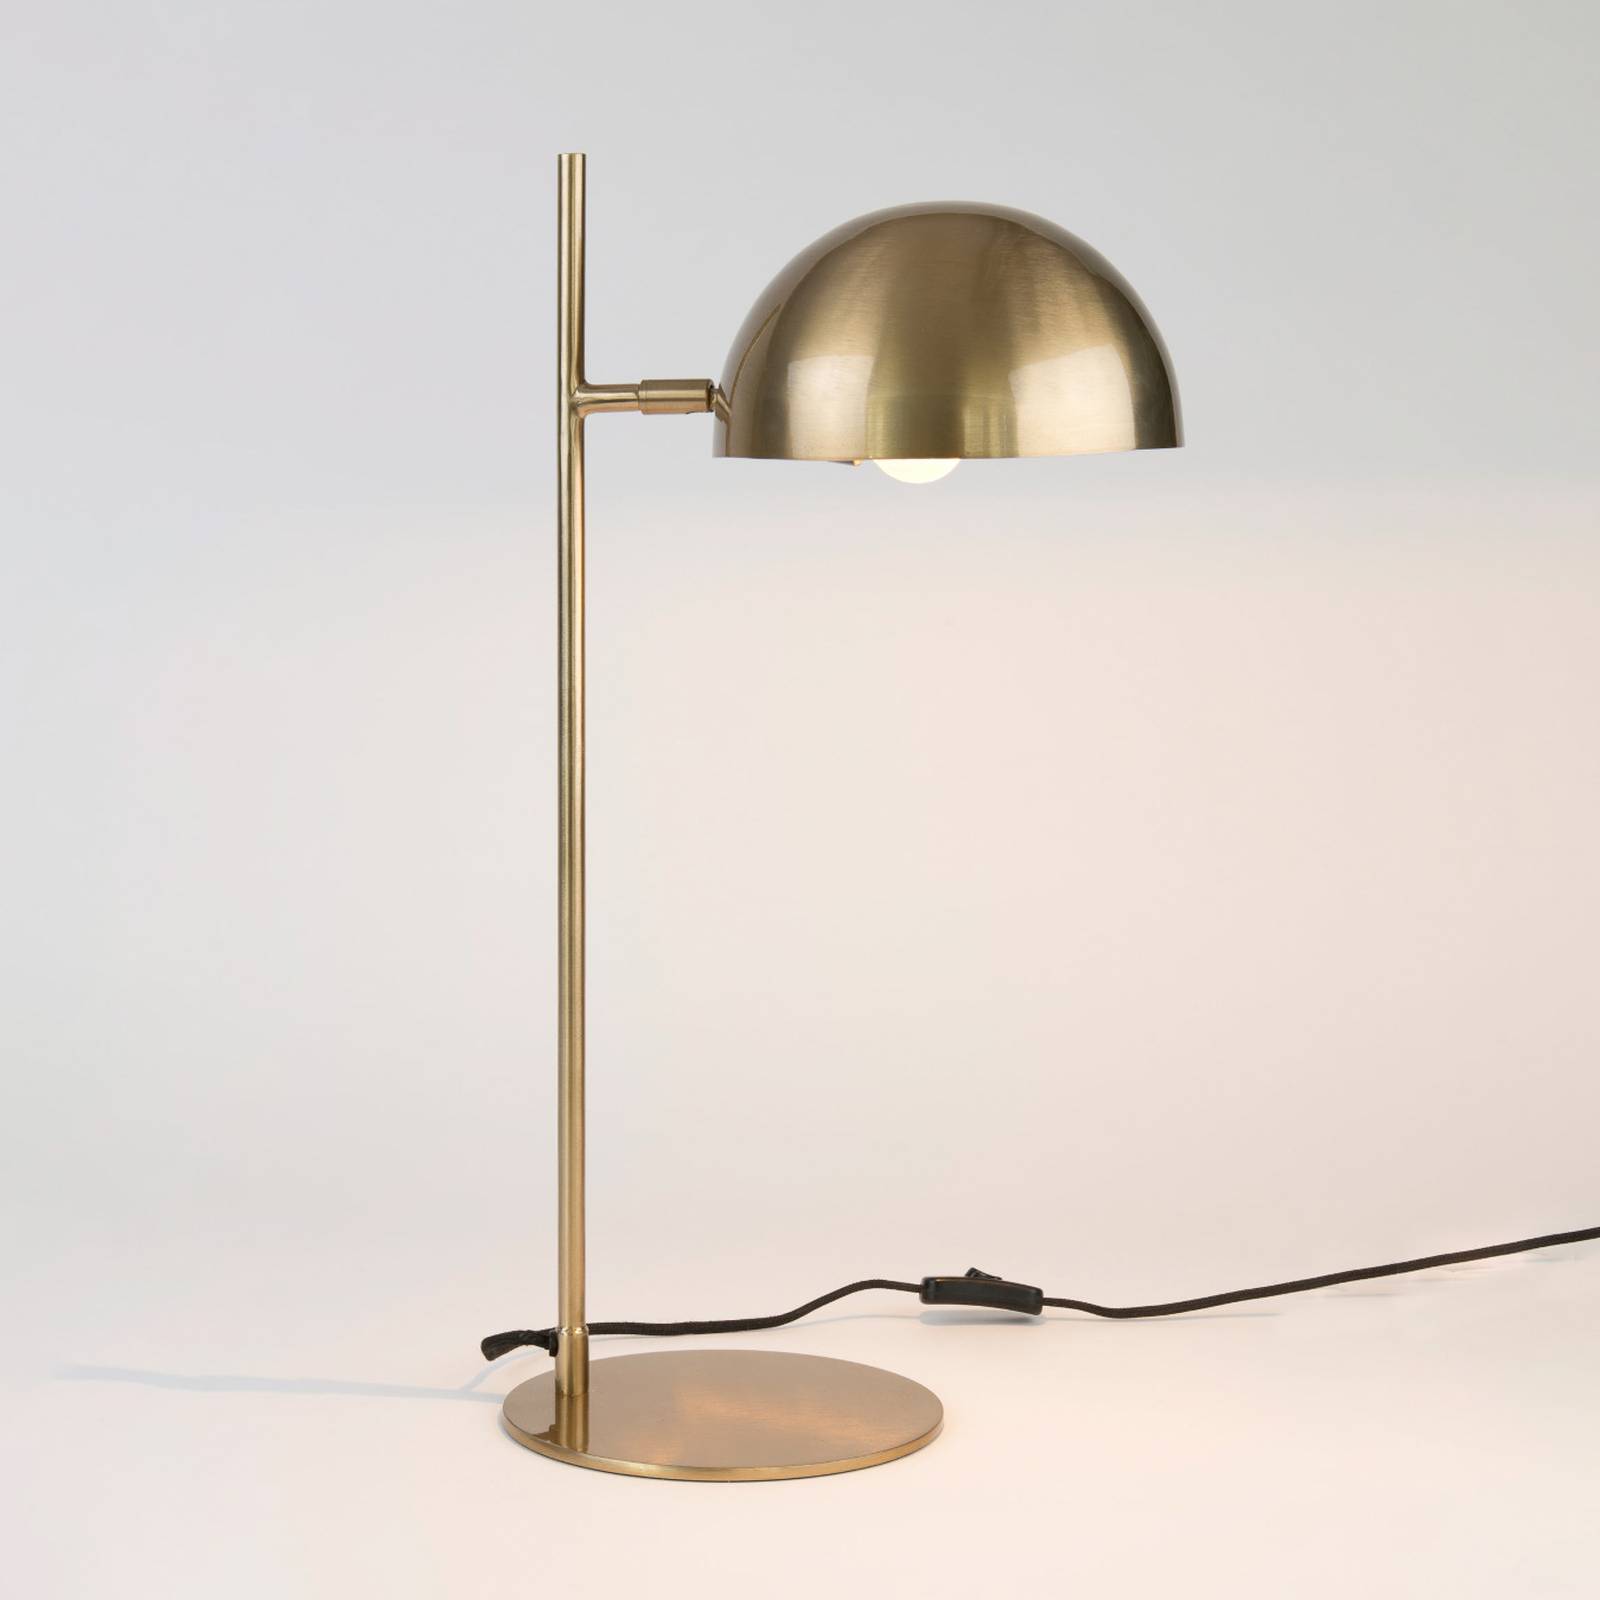 Holländer miro asztali lámpa, arany színű, magasság 58 cm, vas/réz